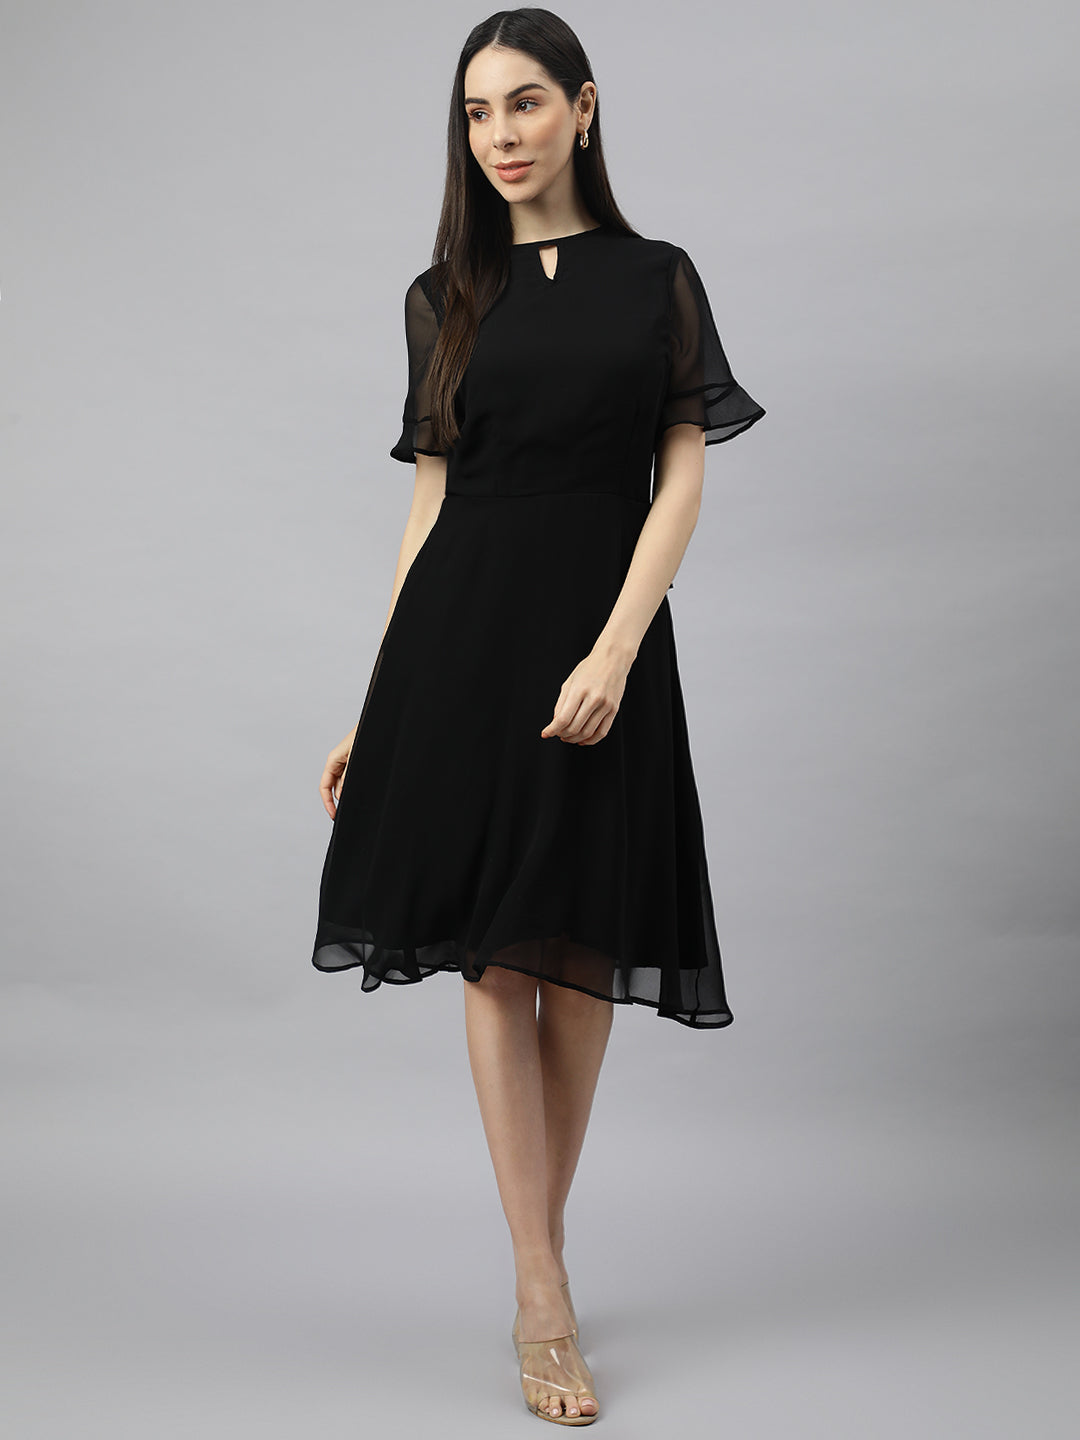 Valbone Women’s Black Georgette Floral Printed Knee Length One Piece Dress